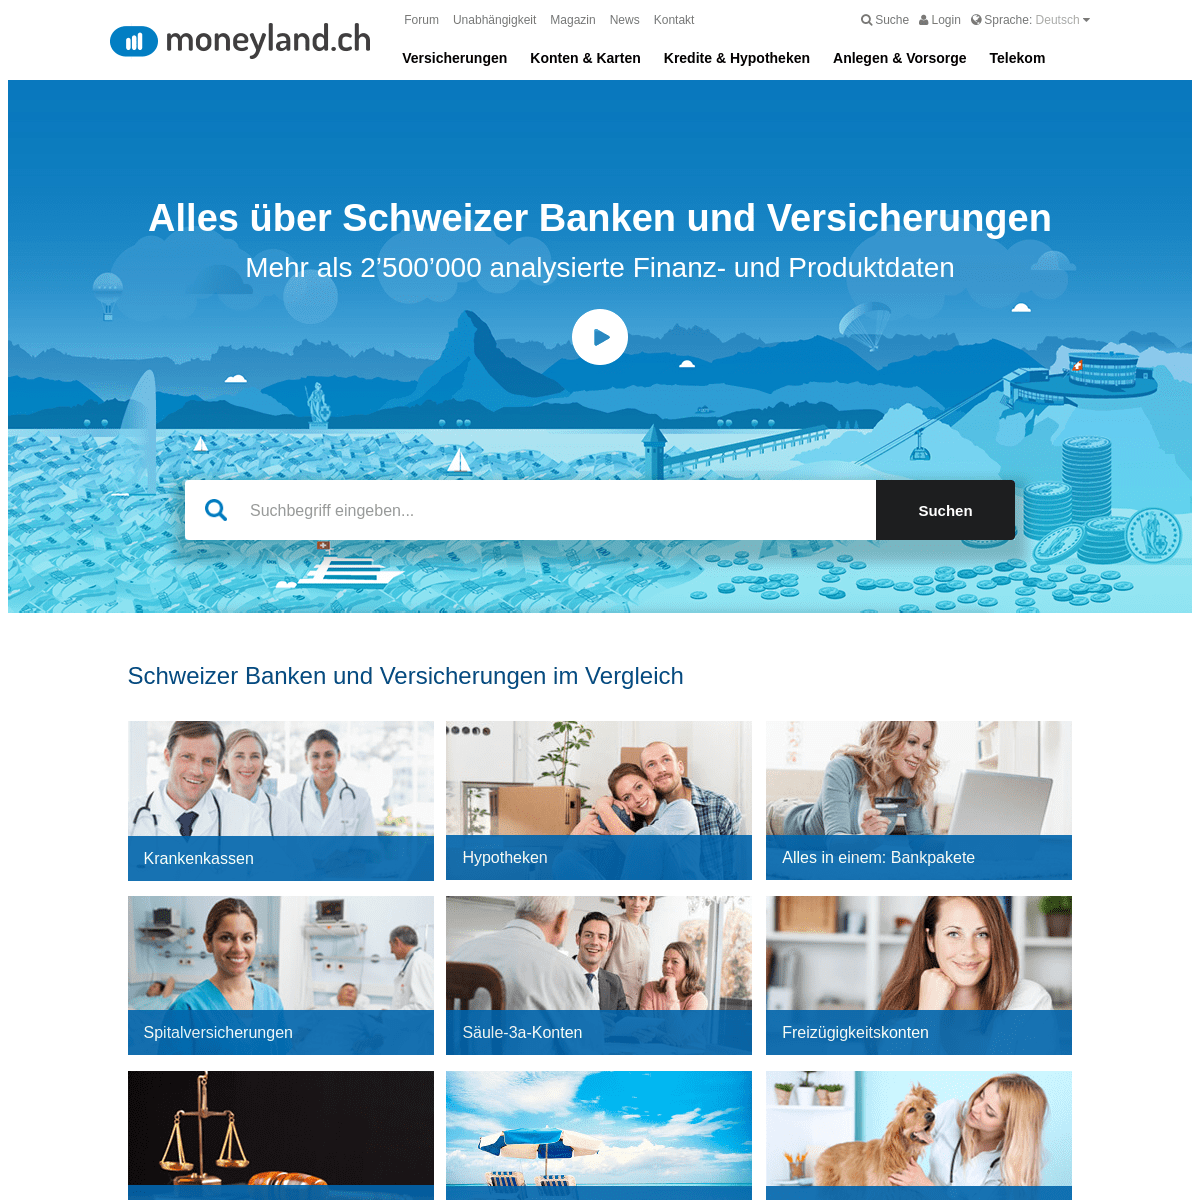 Banken, Versicherungen & Telekom - moneyland.ch